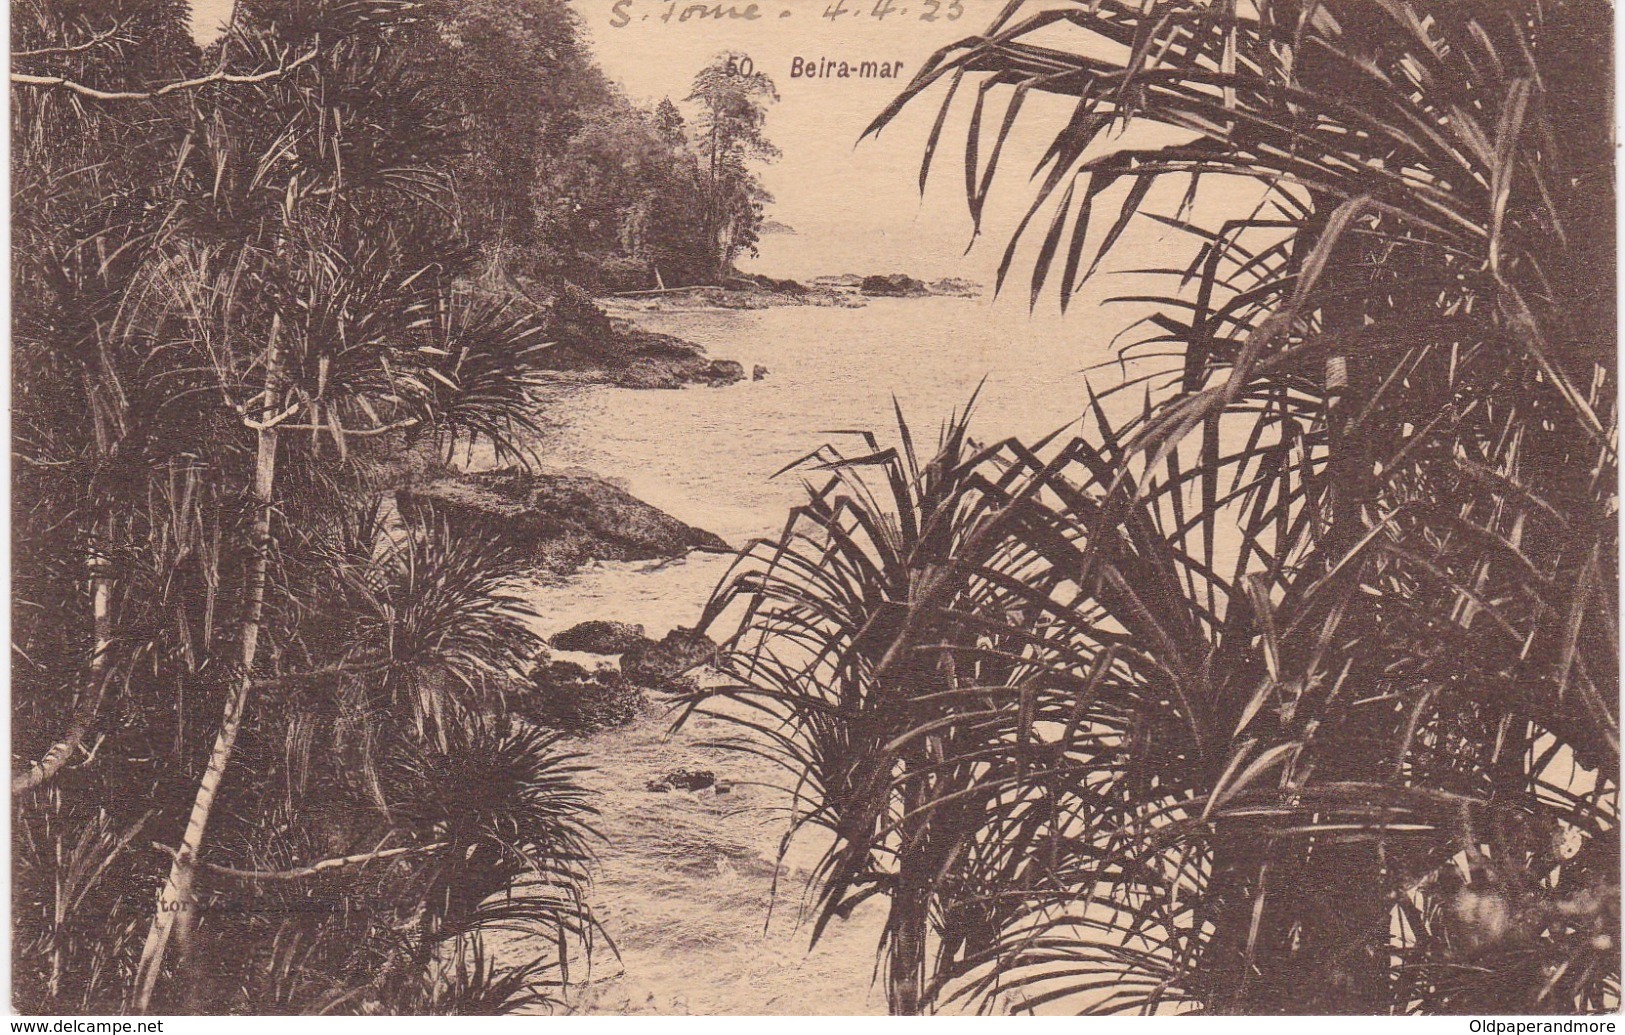 POSTCARD PORTUGAL - OLD COLONY - SÃO TOMÉ E  PRINCIPE - BEIRA - MAR   , S. THOMÉ - Sao Tome Et Principe